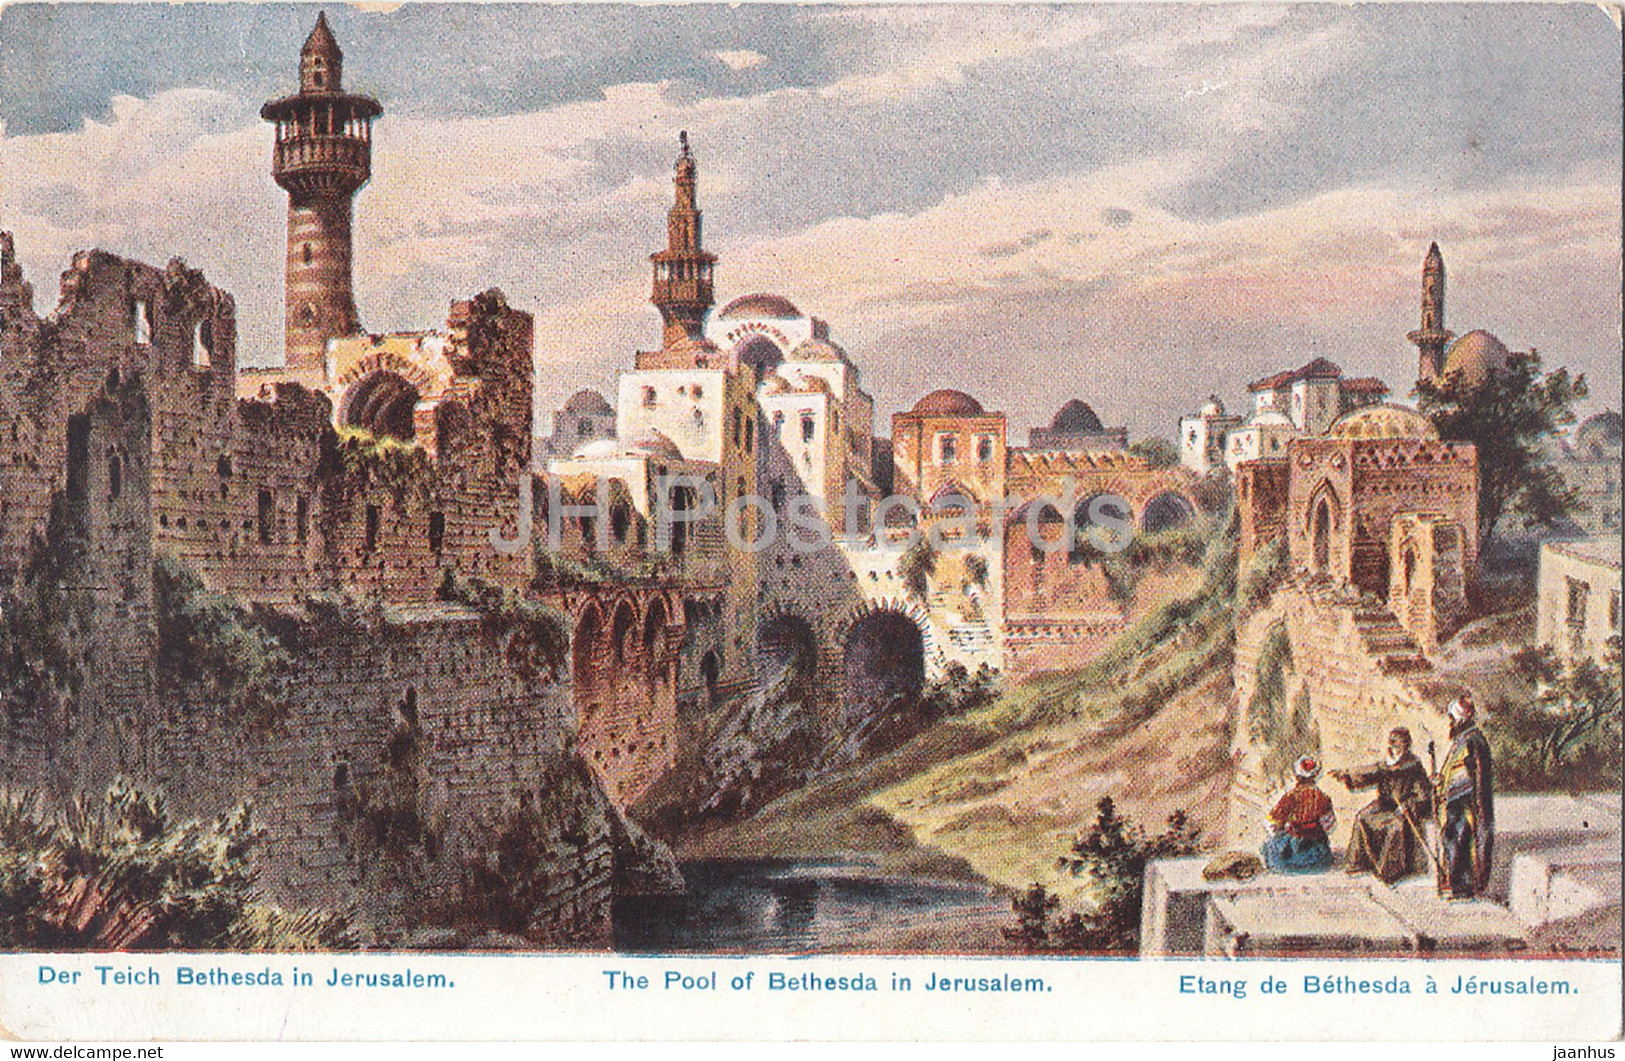 The Pool Of Bethesda In Jerusalem - Etang De Bethesda A Jerusalem - 35 - Illustration - Old Postcard - Germany - Used - Perlberg, F.